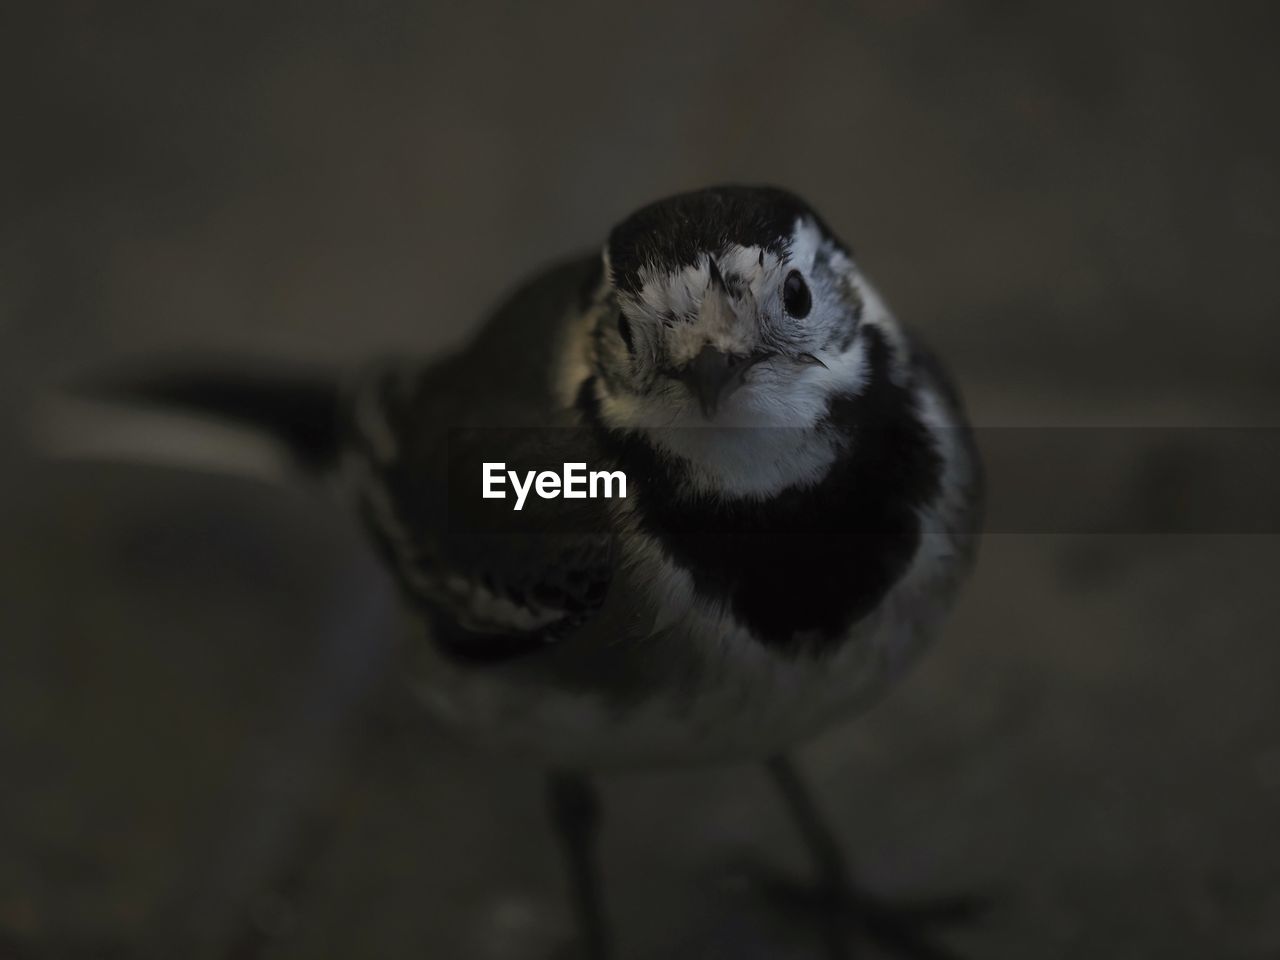 CLOSE-UP VIEW OF BIRD